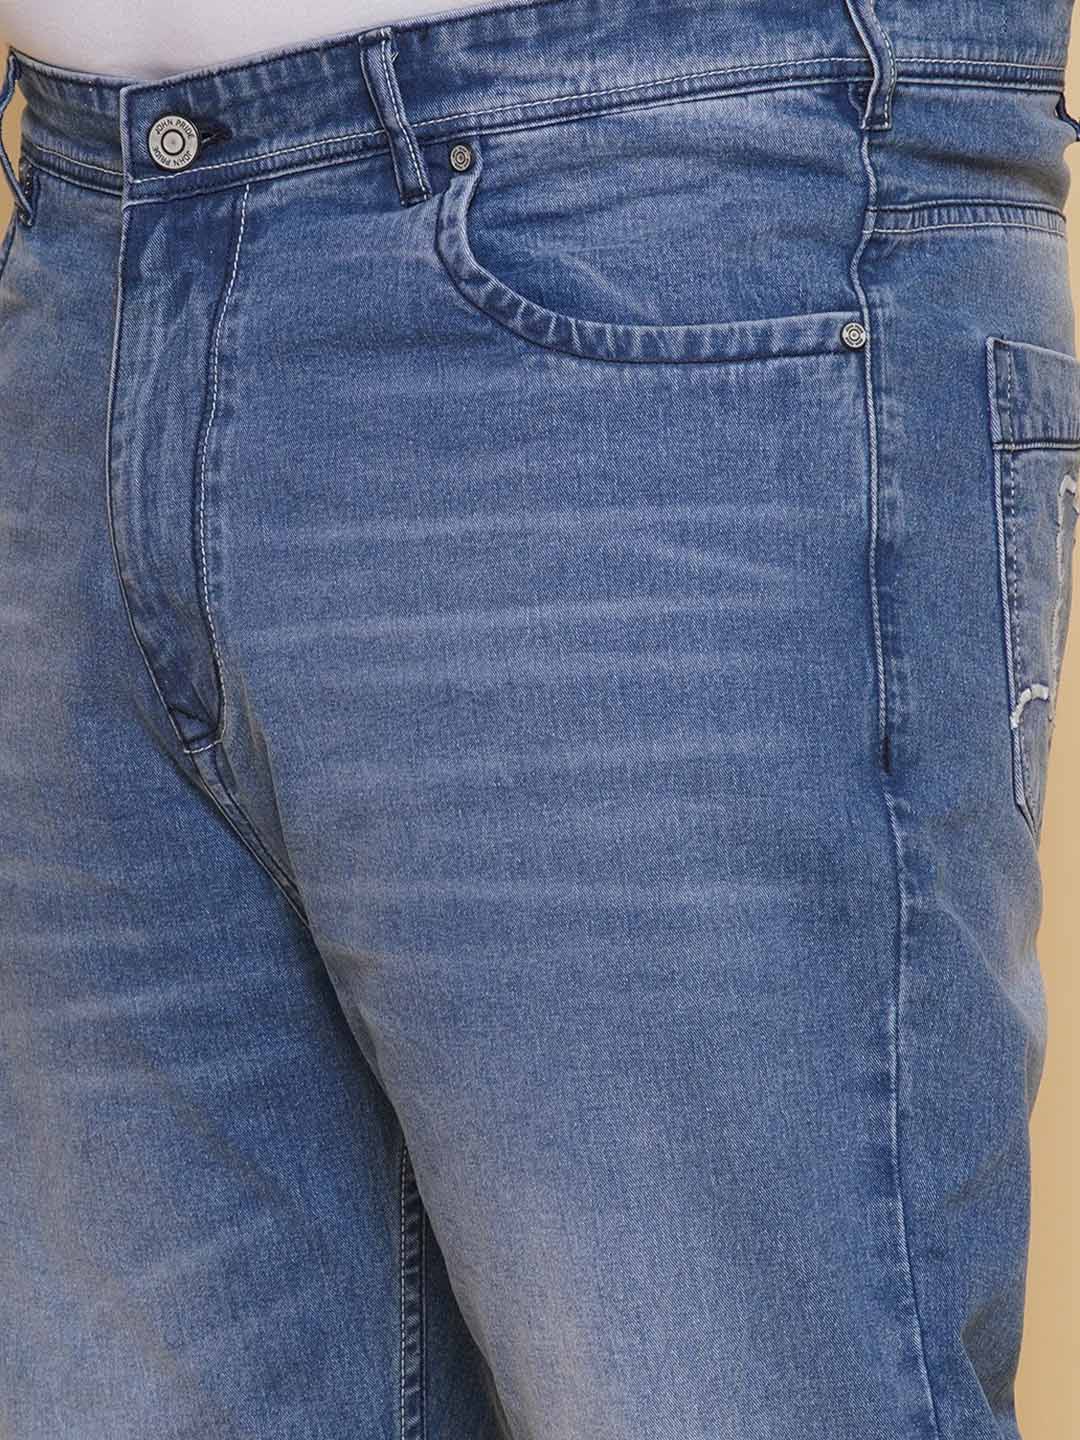 bottomwear/jeans/EJPJ25134/ejpj25134-2.jpg